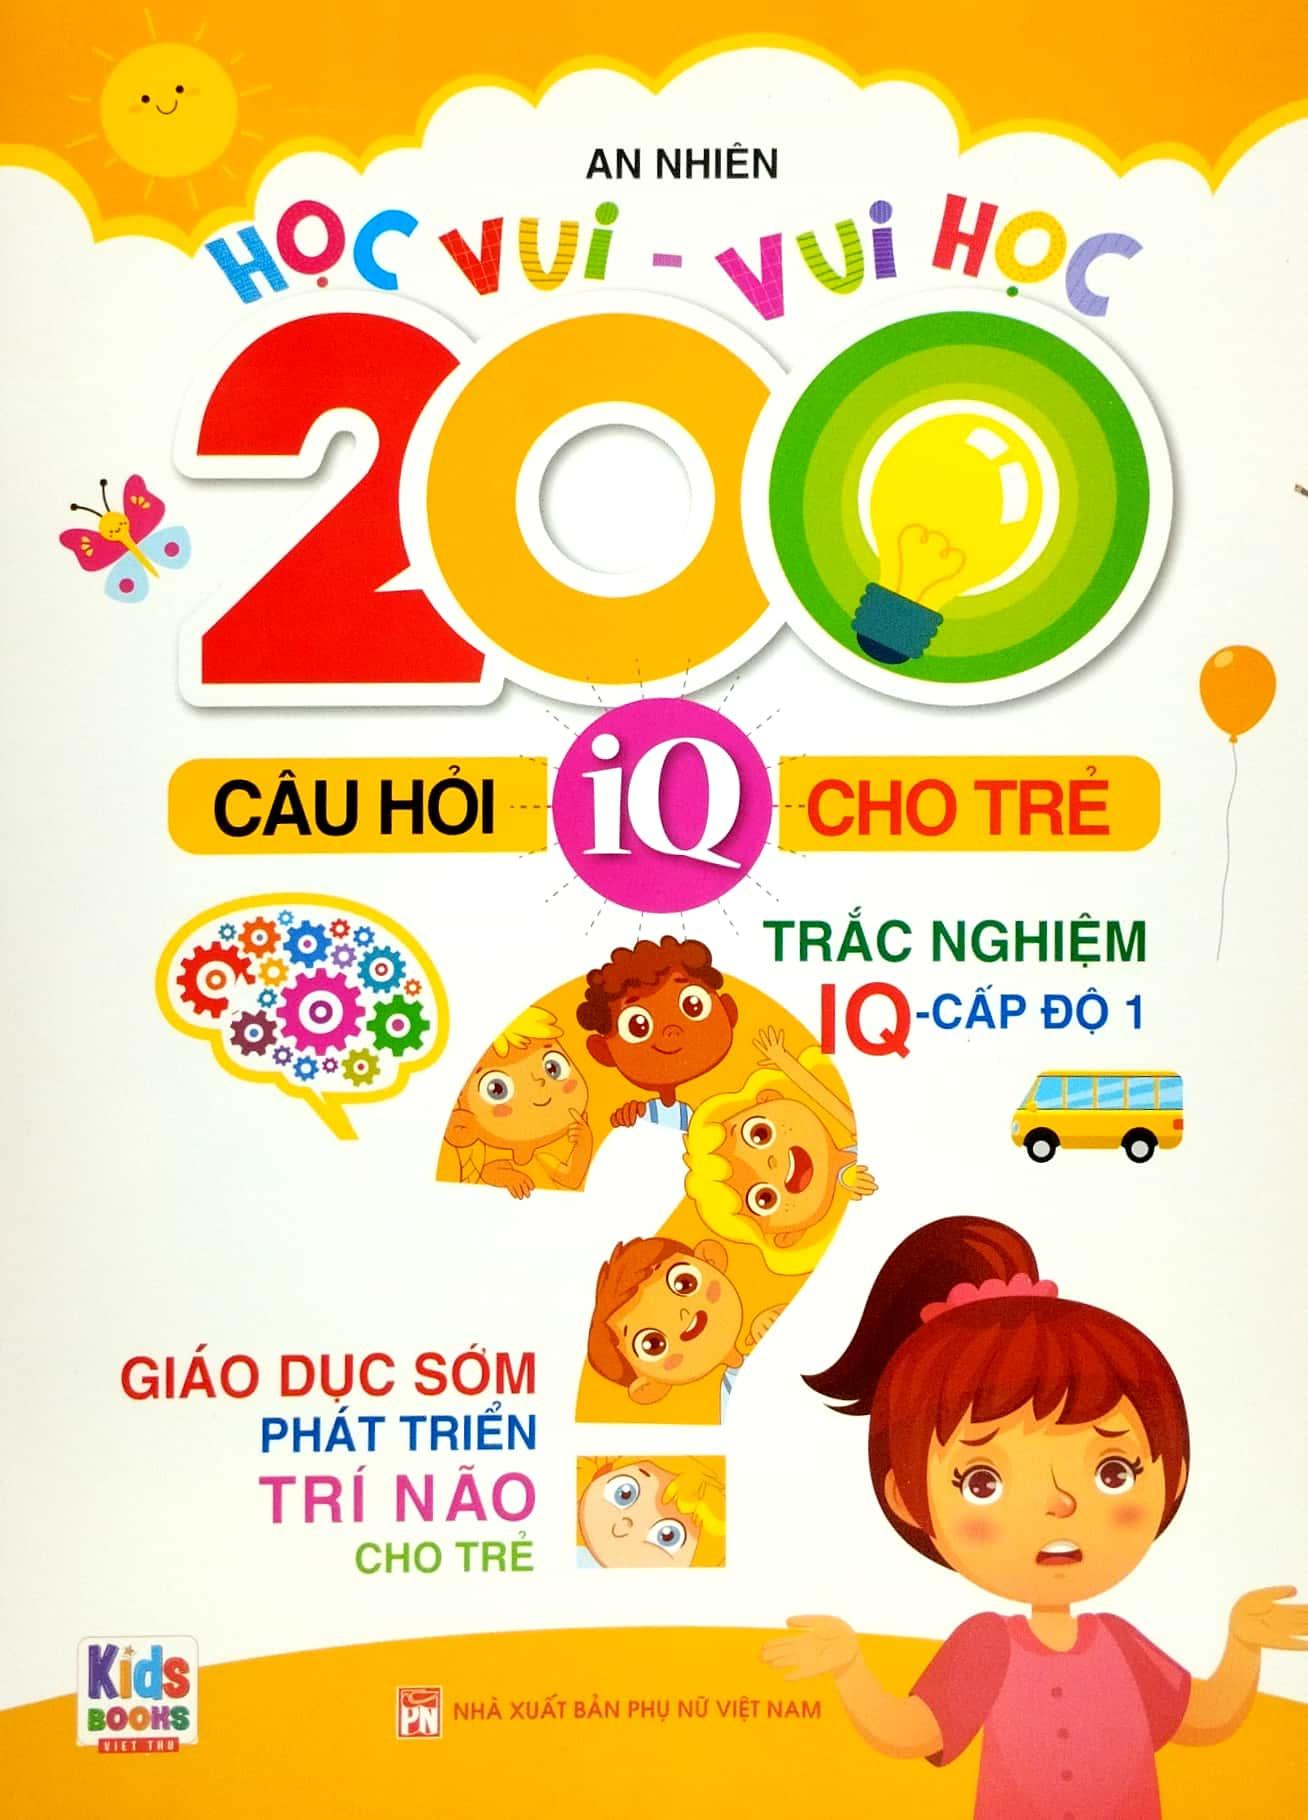 Bộ Sách Học Vui-Vui Học - 200 Câu Hỏi IQ Cho Trẻ - Trắc Nghiệm IQ (Bộ 4 Cuốn)